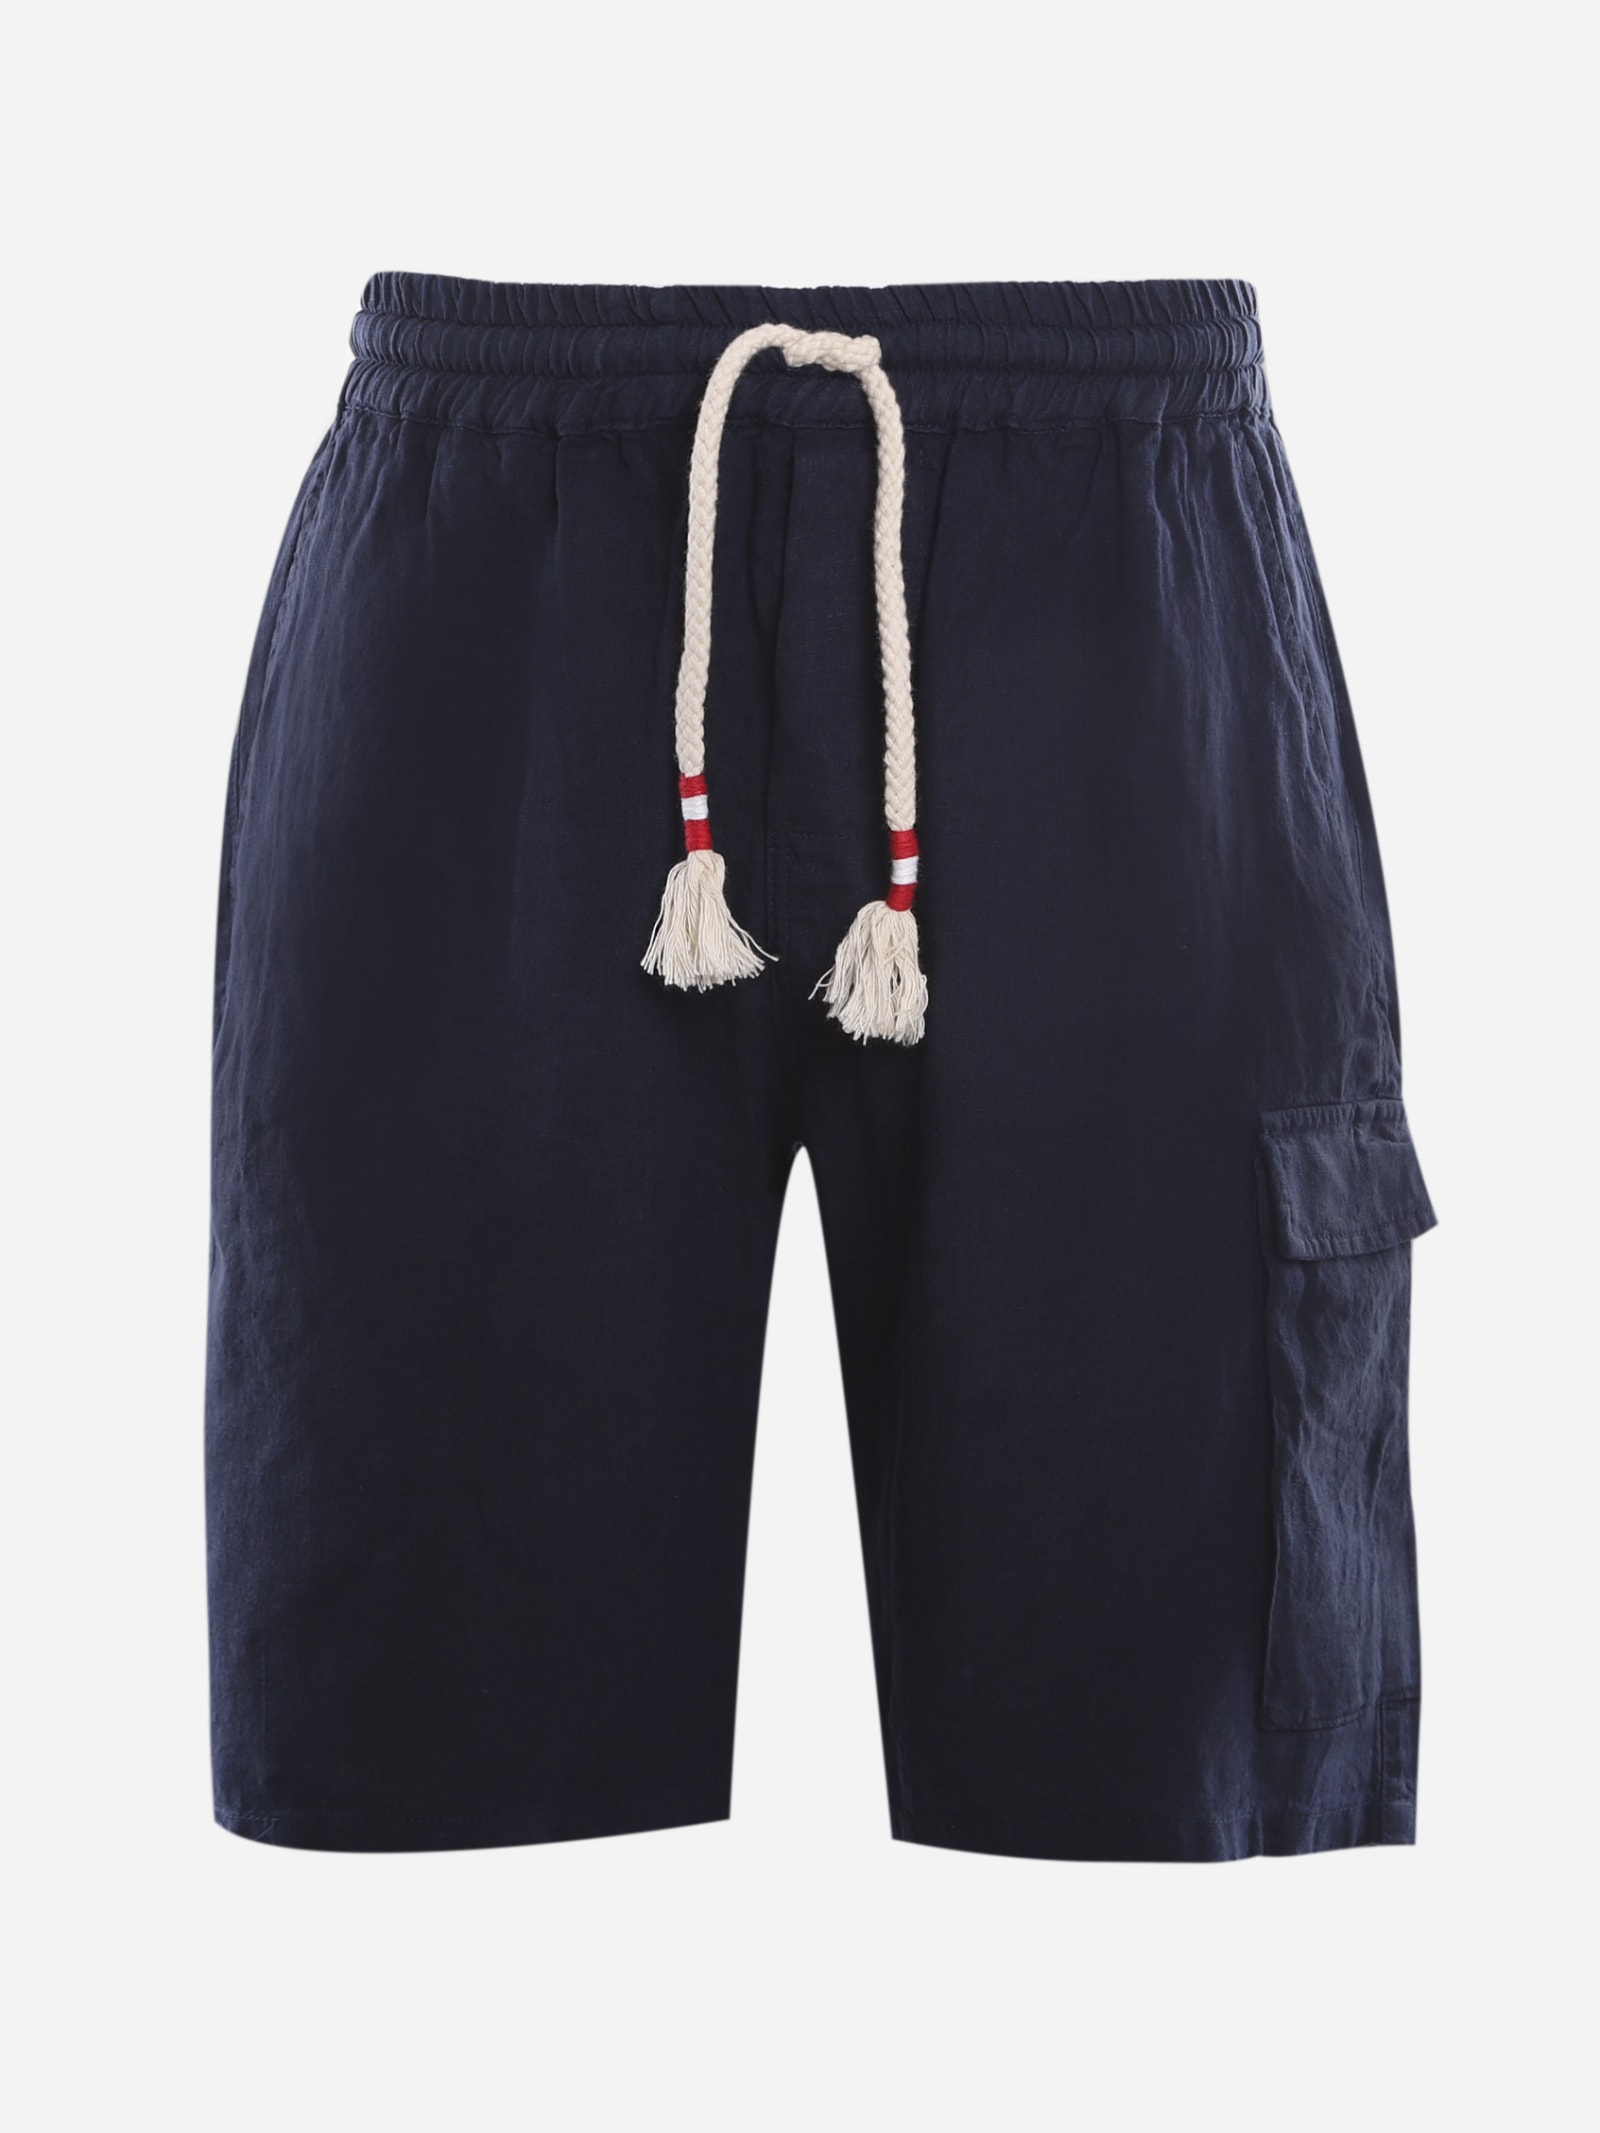 MC2 Saint Barth Bermuda Shorts With Drawstring Made Of Linen